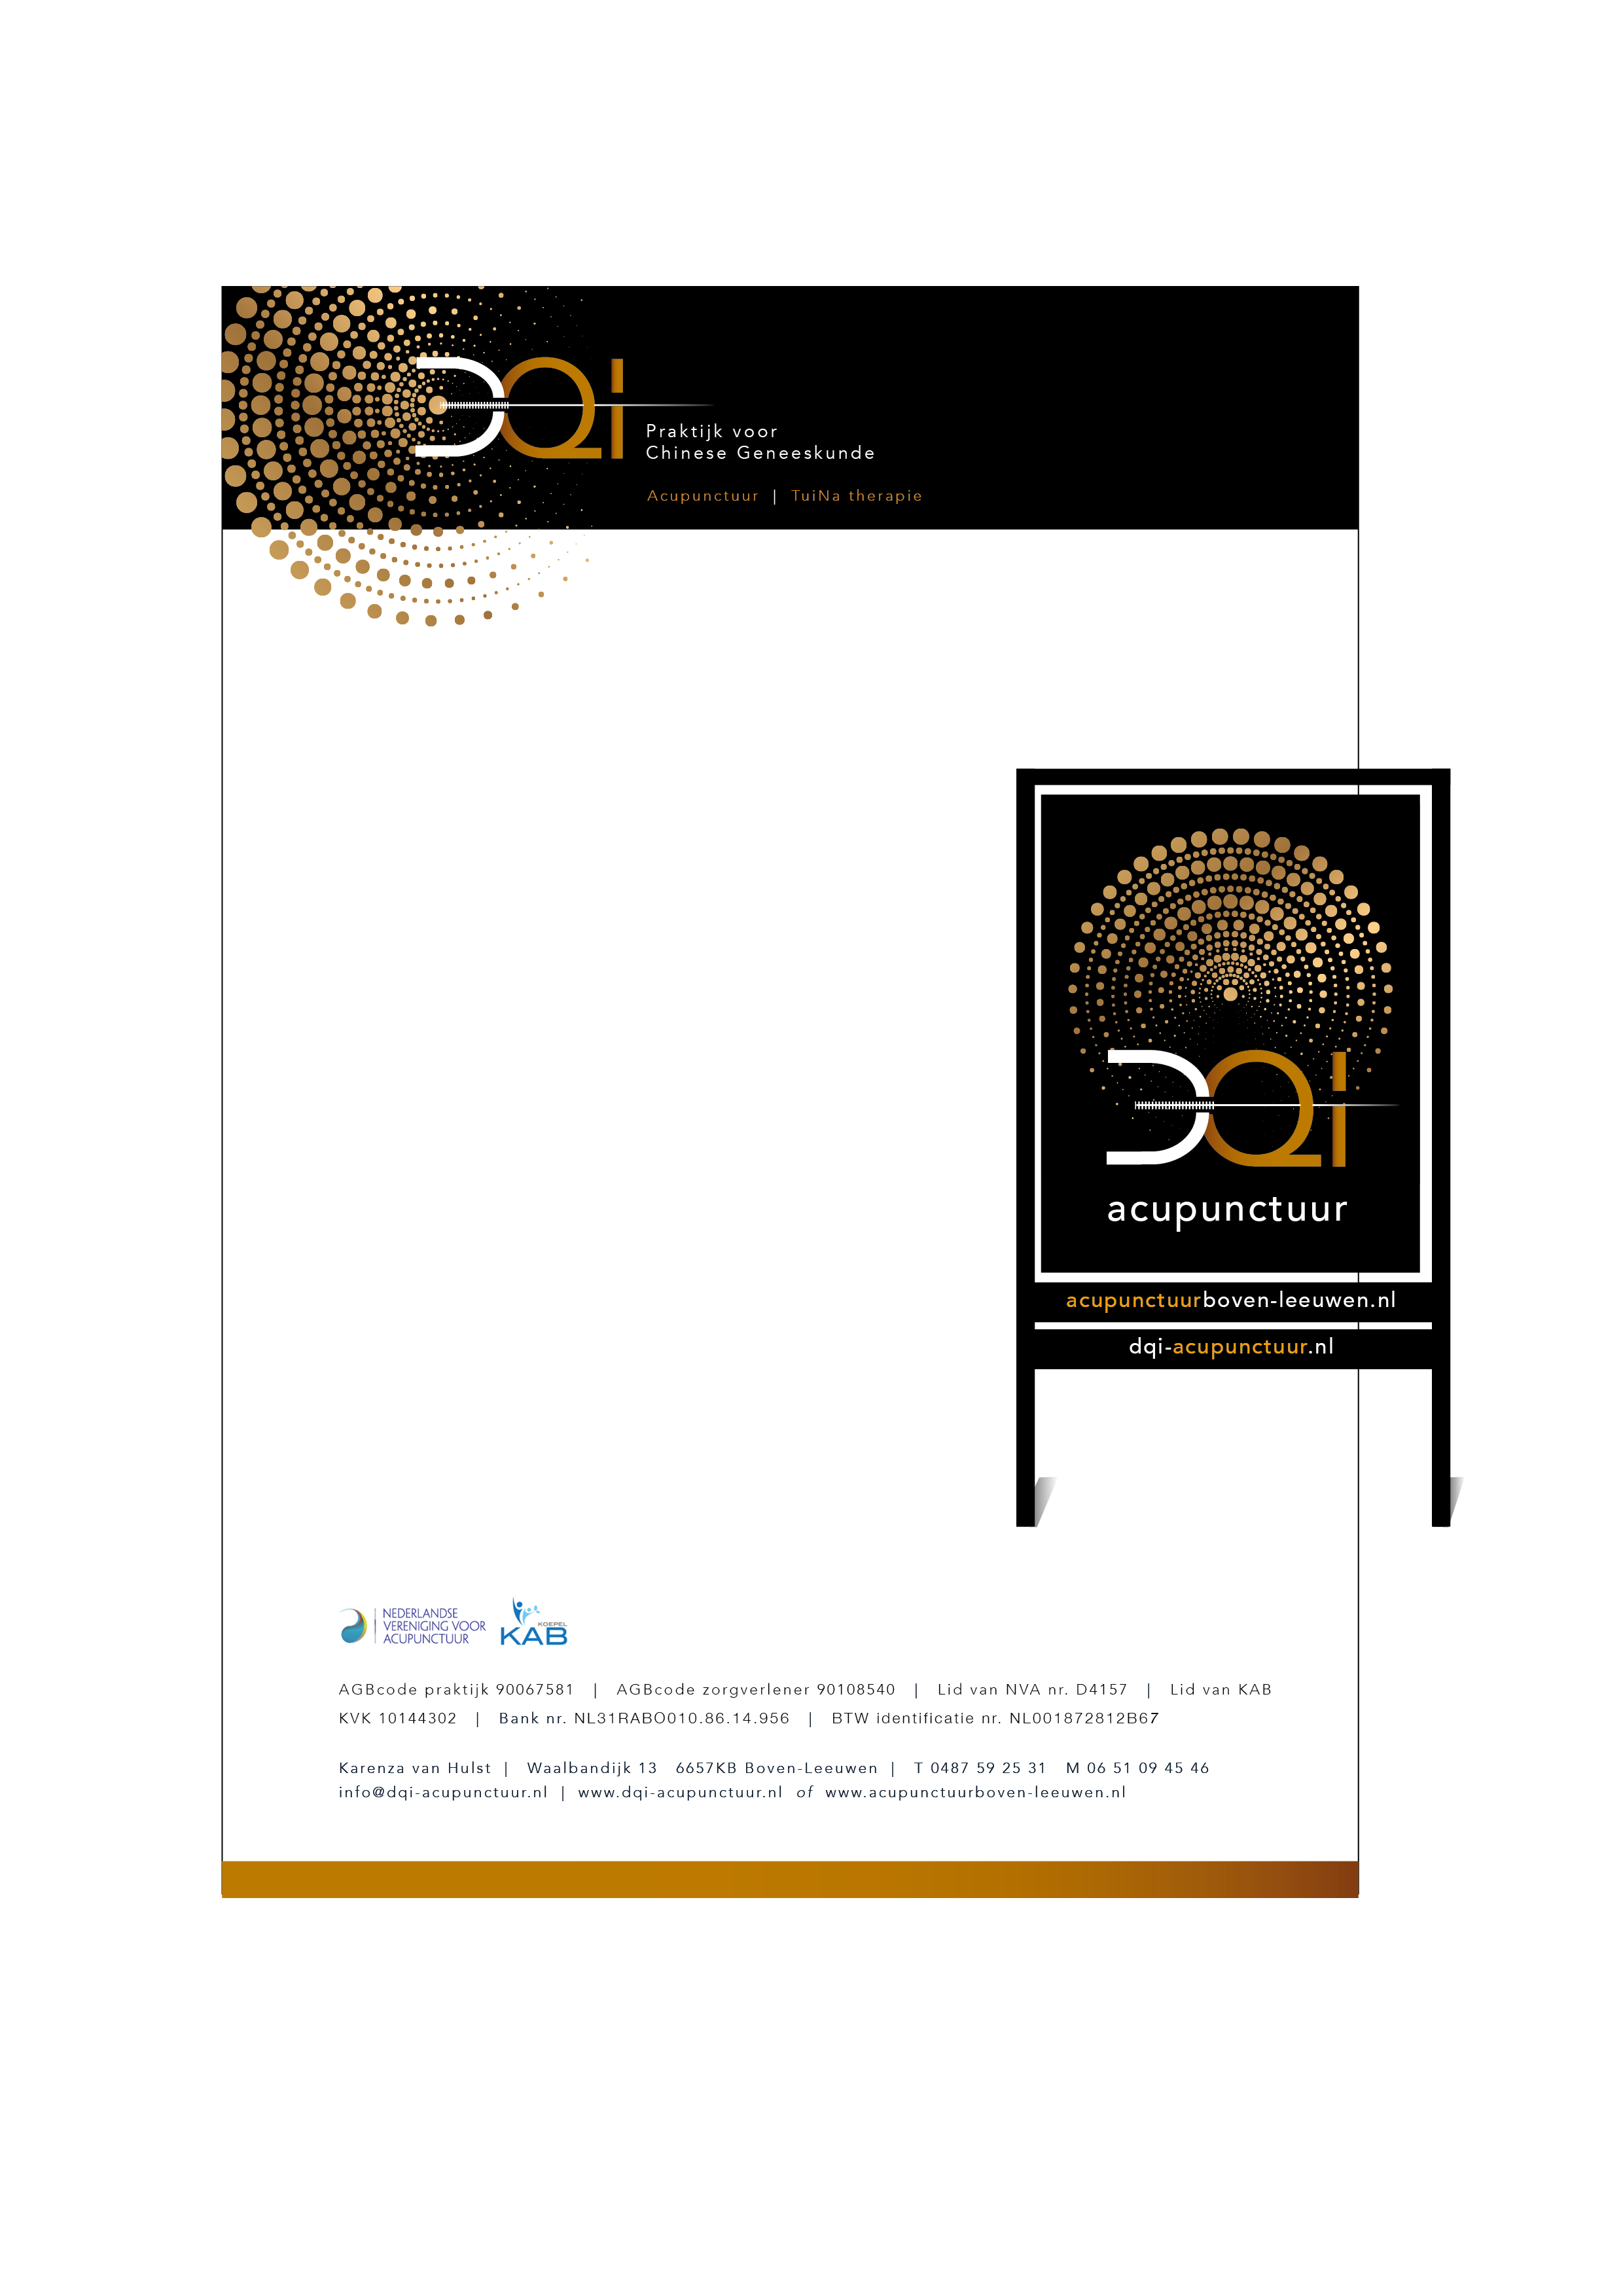 6 DQI acupunctuur Dynamic Design grafischontwerp - kopie